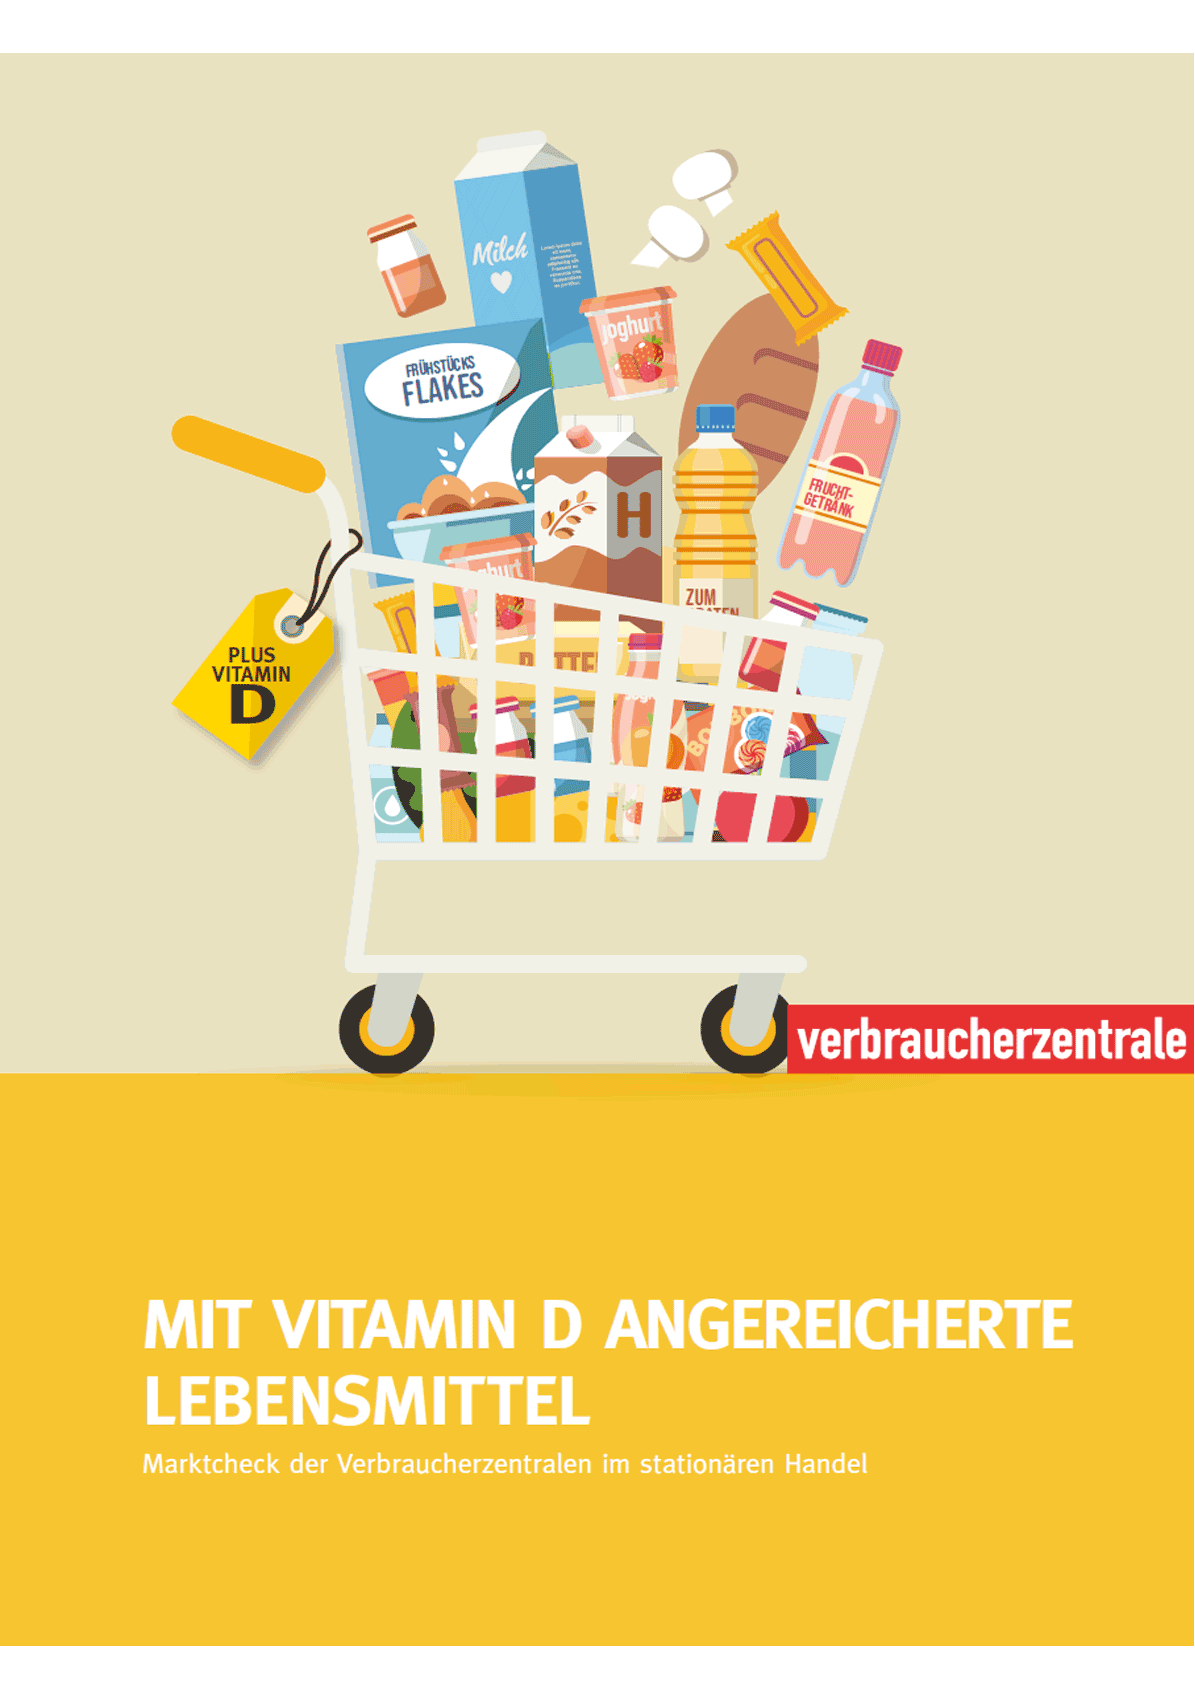 Vitamin D: Report zu mit Vitamin D angereicherten Lebensmitteln (2021)